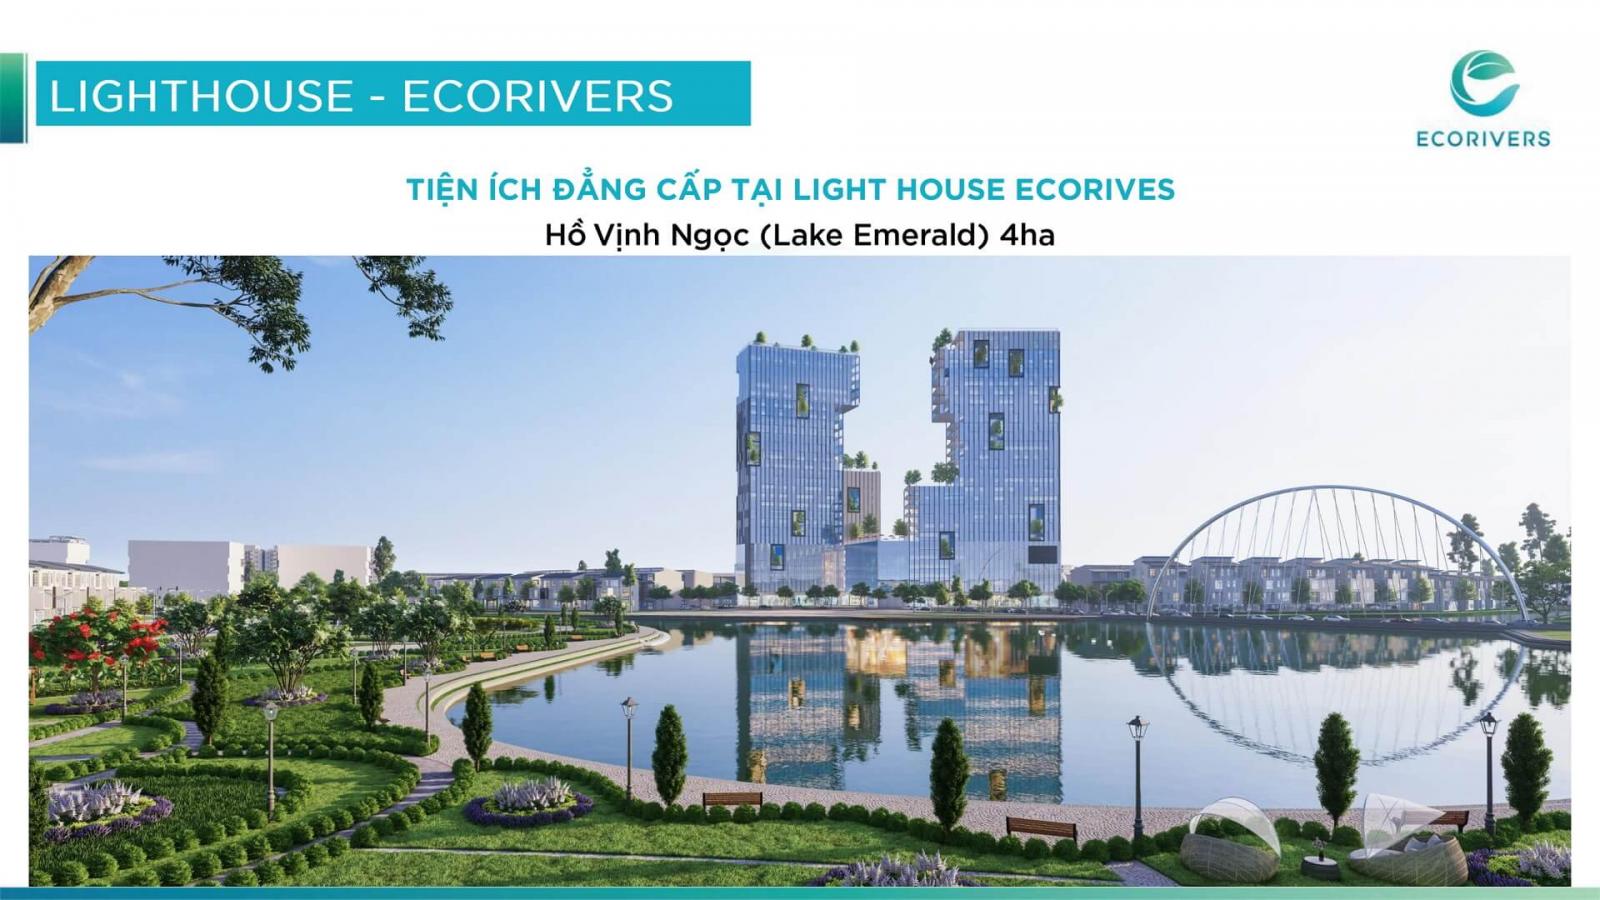 Hình ảnh về Lighthouse Ecorivers